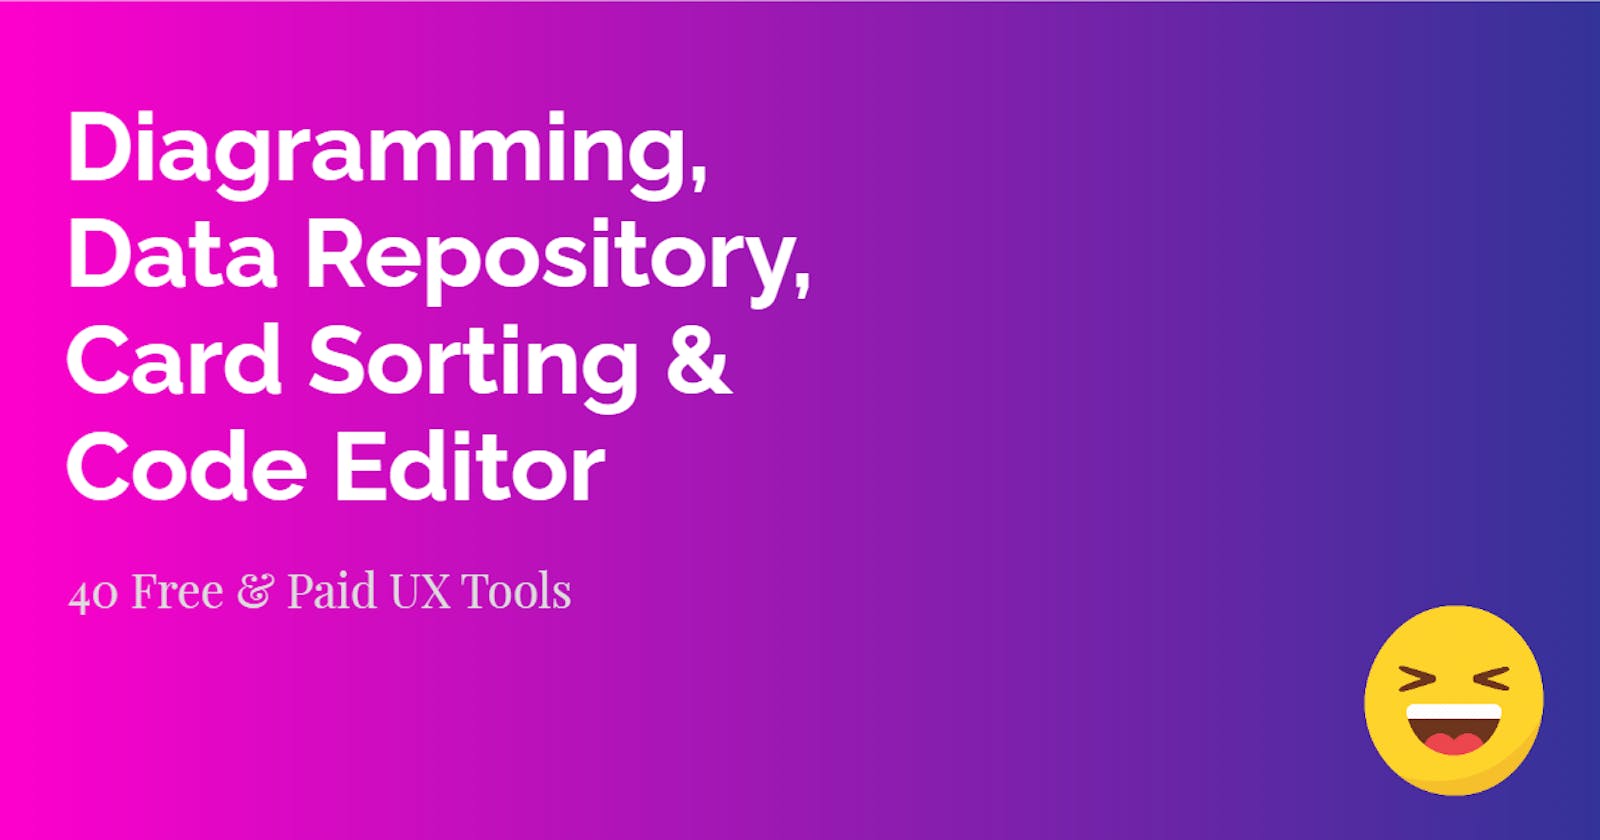 Diagramming, Data Repository, Card Sorting & Code Editor Tools | UX